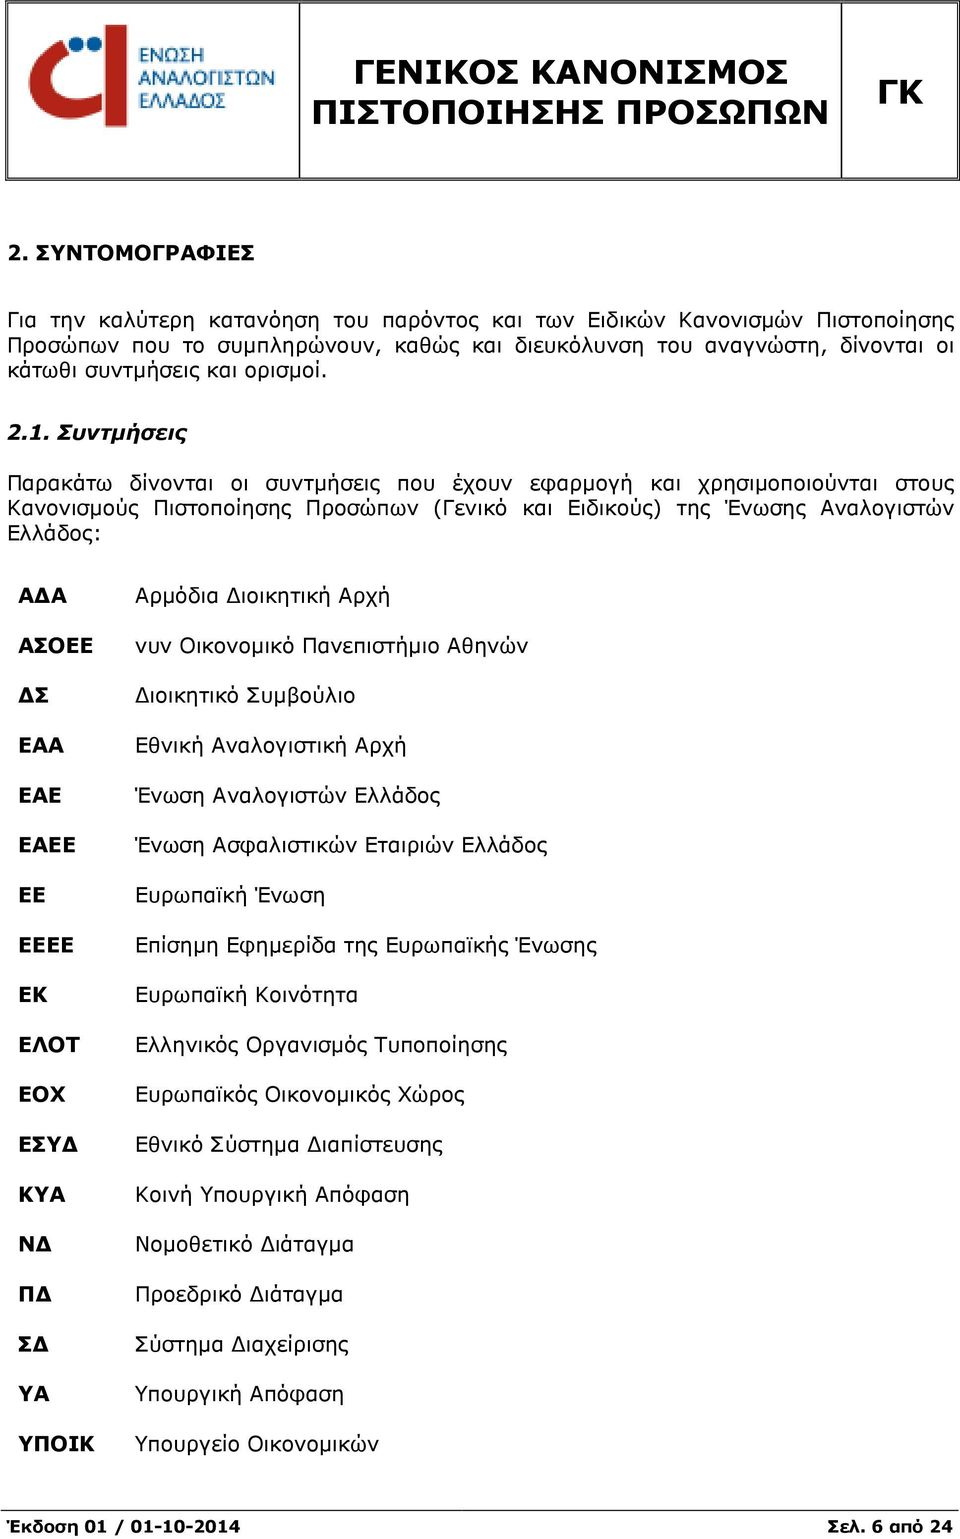 Συντµήσεις Παρακάτω δίνονται οι συντµήσεις που έχουν εφαρµογή και χρησιµοποιούνται στους Κανονισµούς Πιστοποίησης Προσώπων (Γενικό και Ειδικούς) της Ένωσης Αναλογιστών Ελλάδος: Α Α ΑΣΟΕΕ Σ ΕΑΑ ΕΑΕ